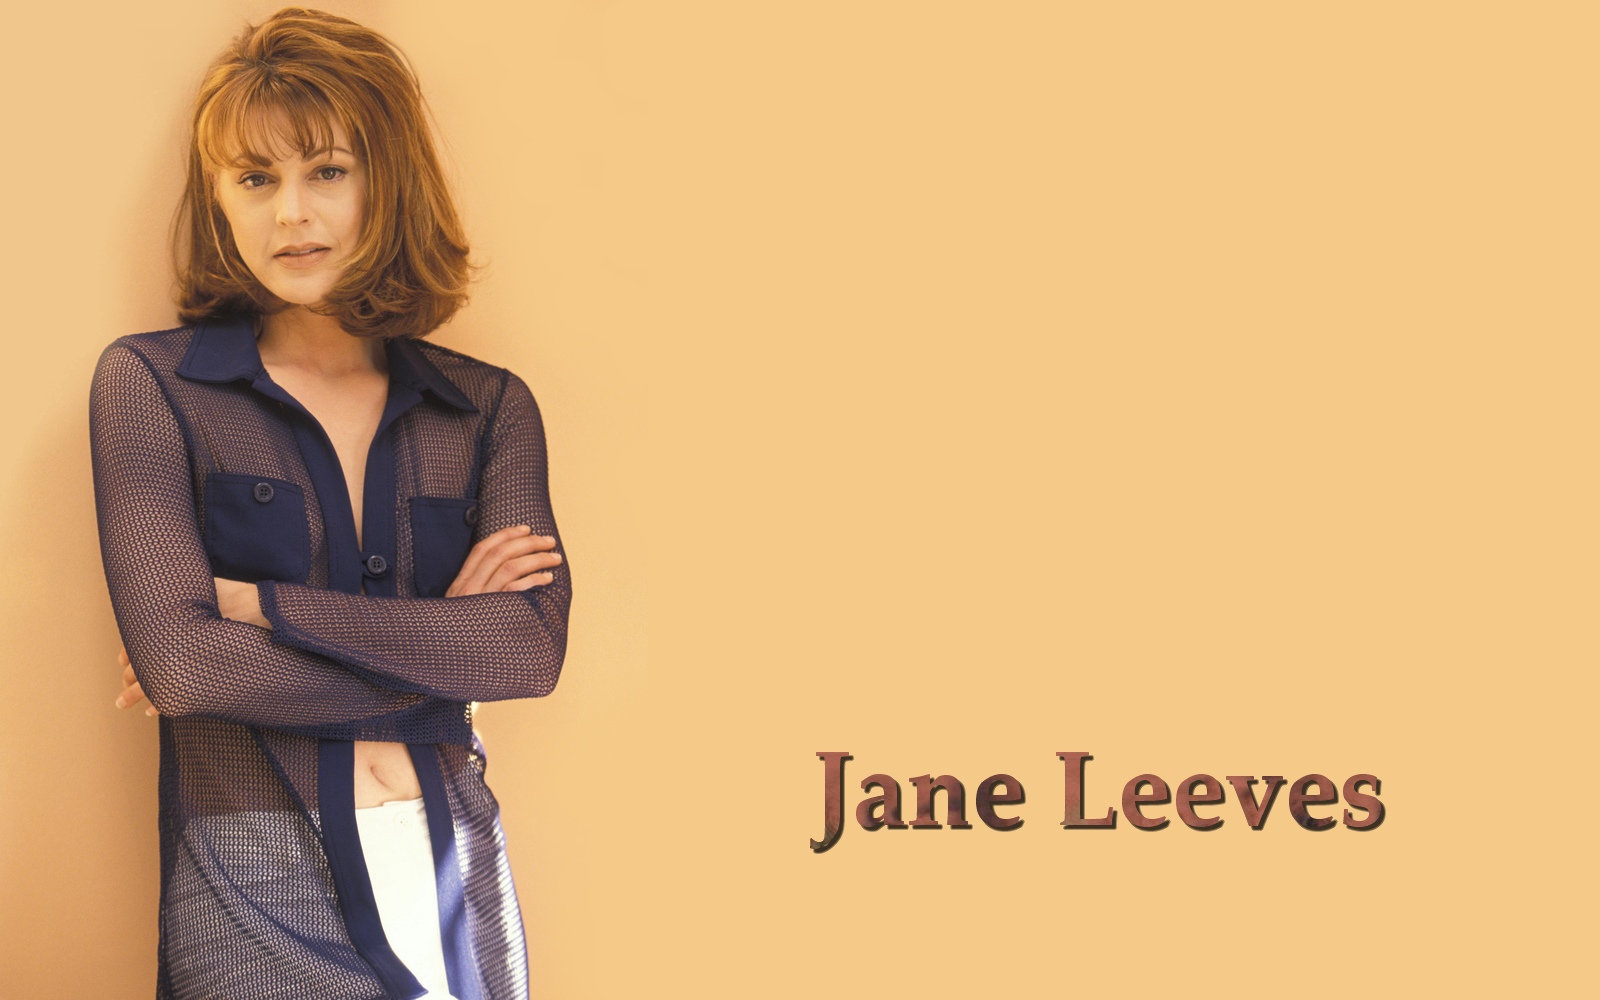 Jane Leeves See Through